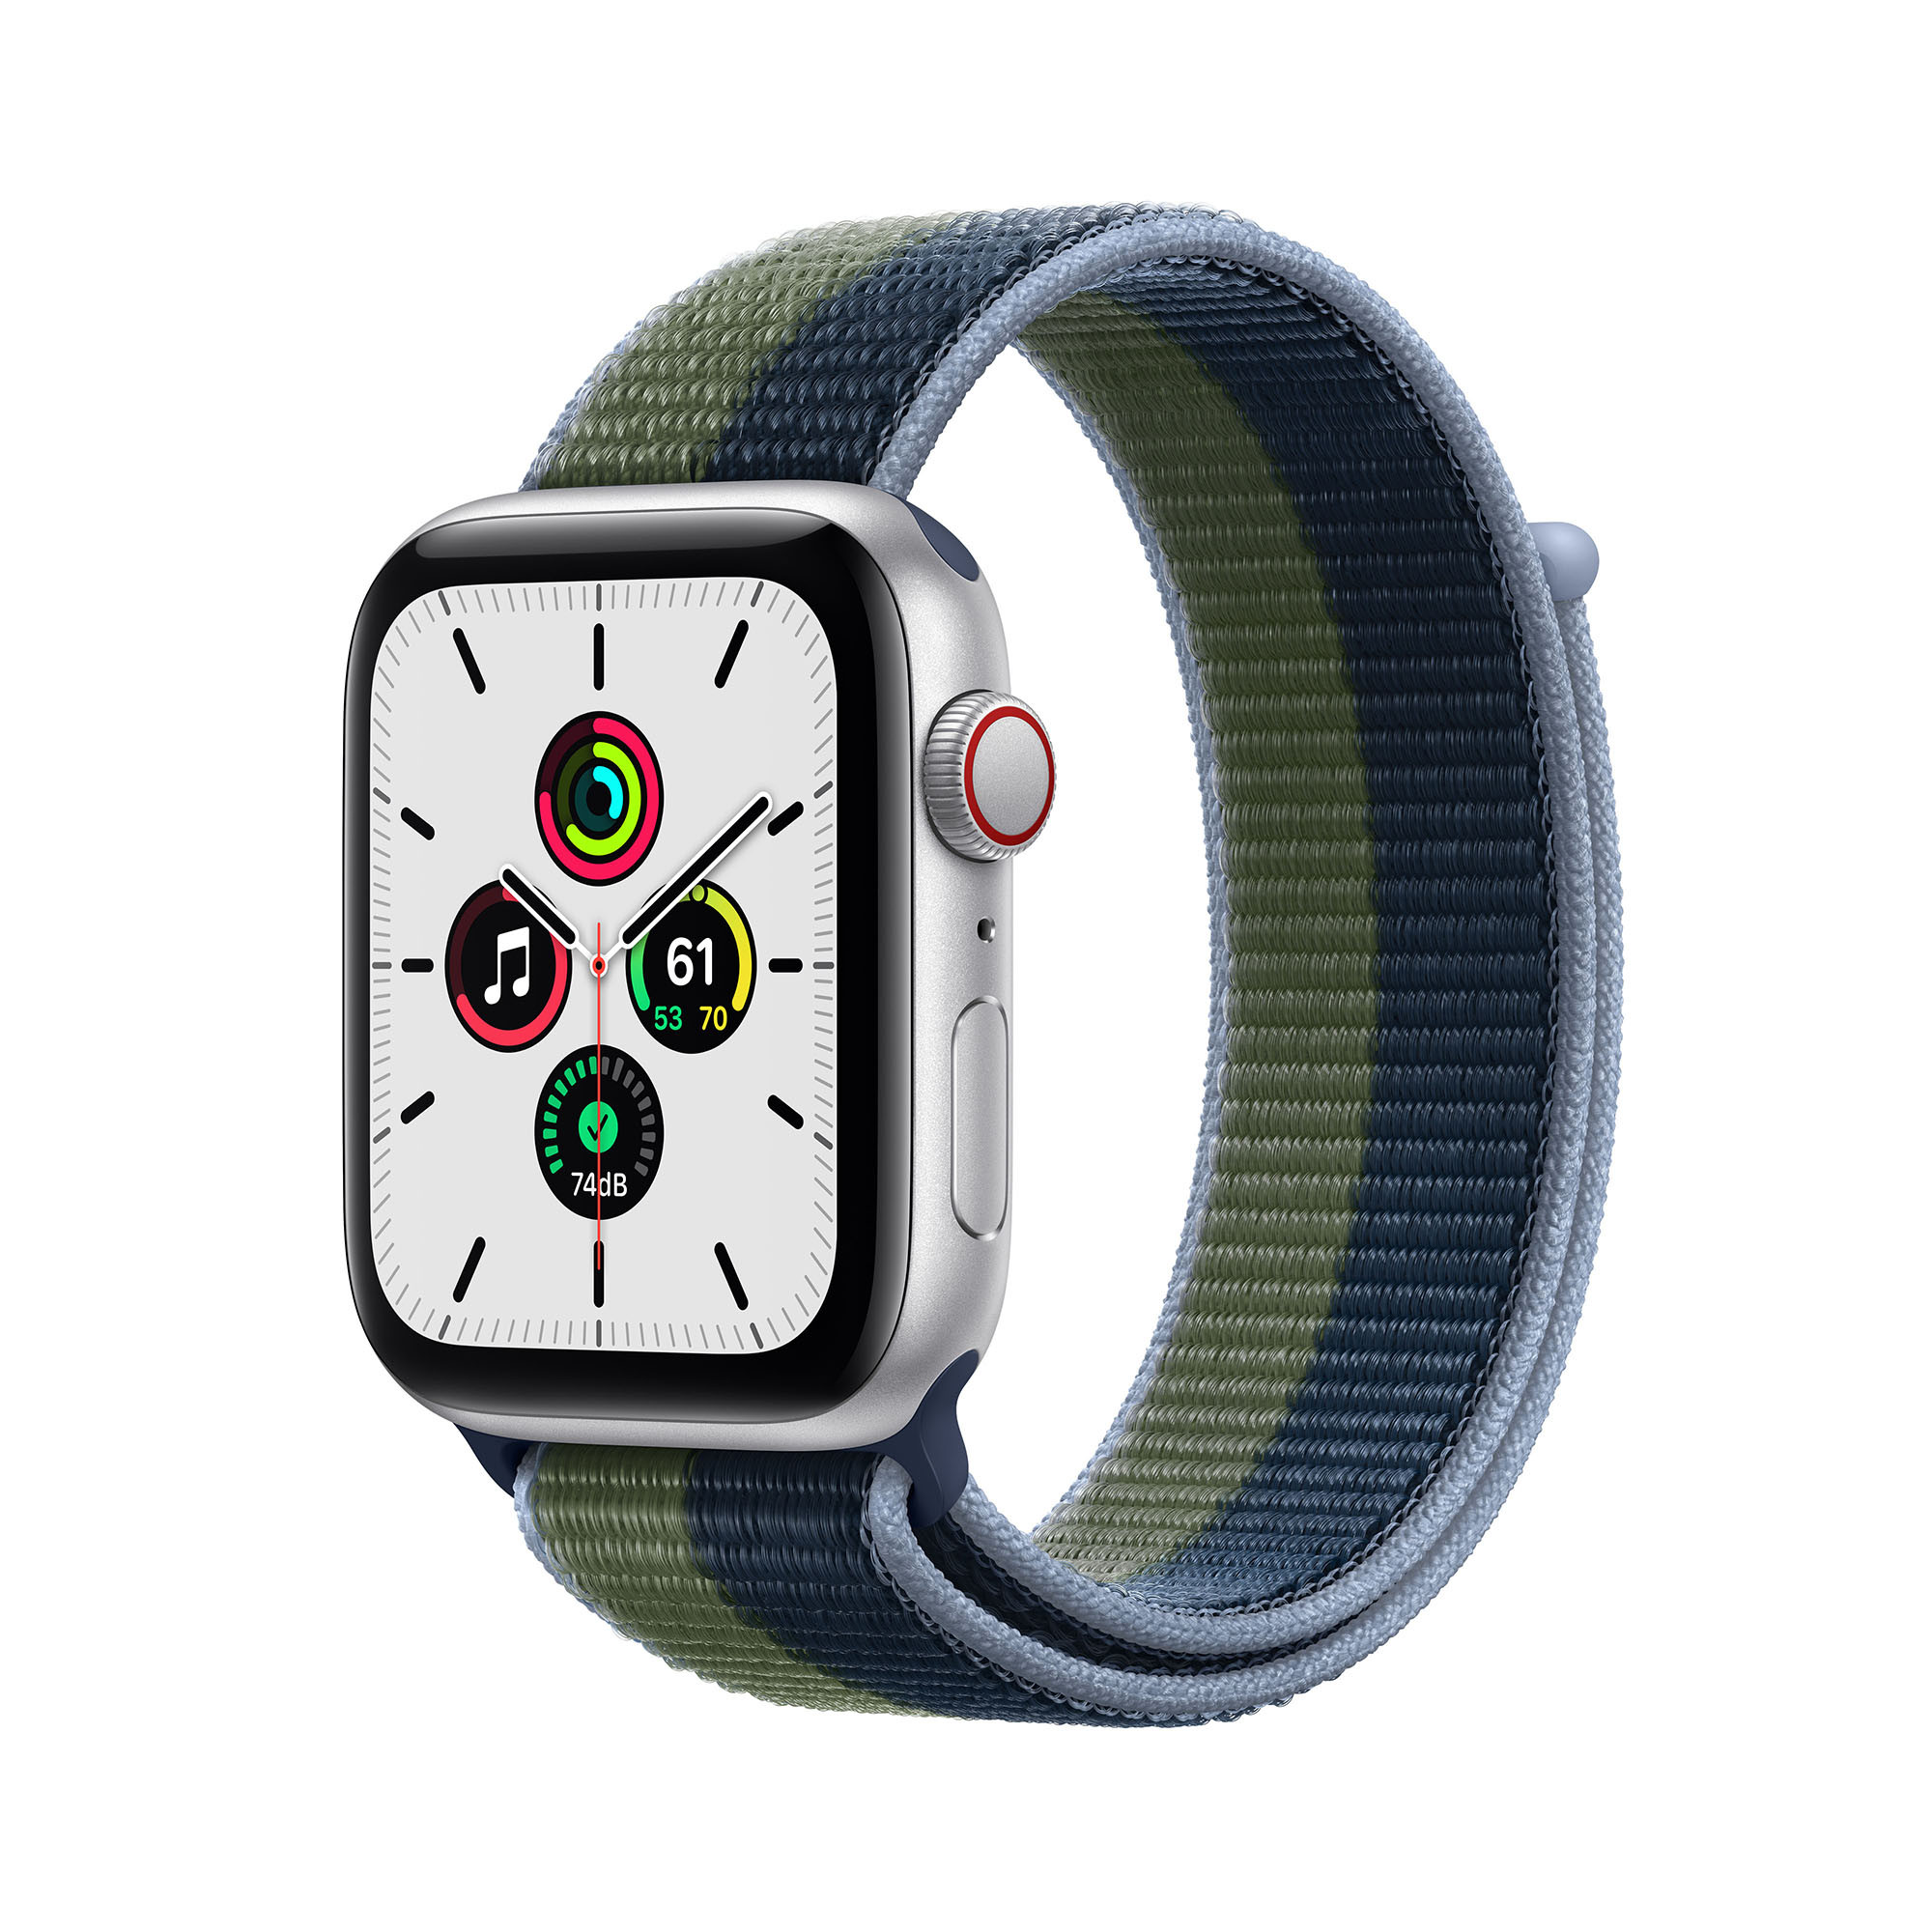 Apple Watch SE met 4G (44mm) - zilver - met een abyss-blauw/mosgroen geweven sportbandje (2021)